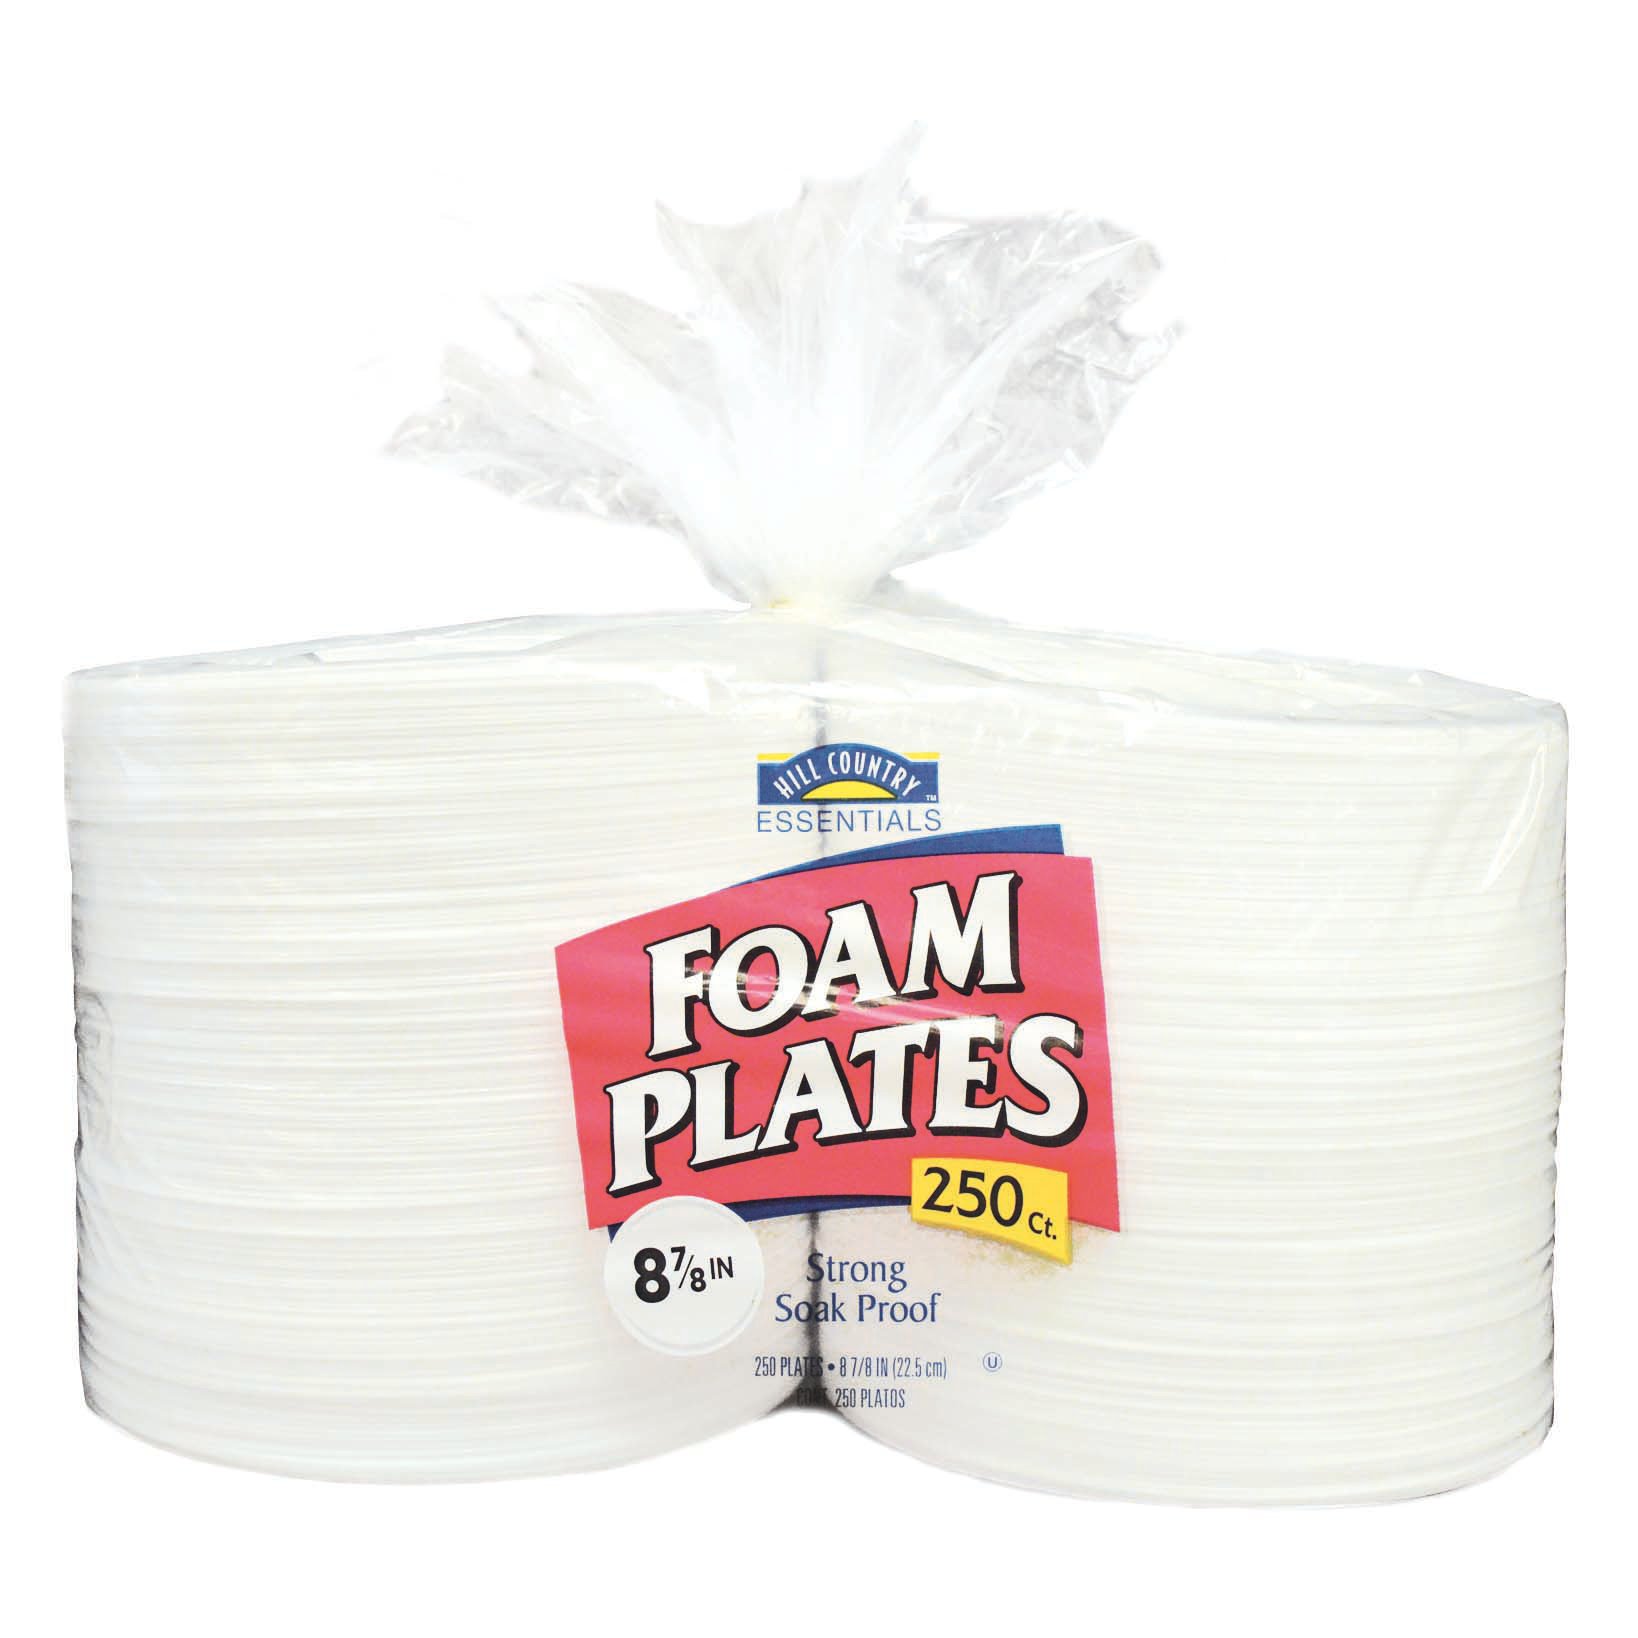 EconoMax Foam Trays - Shop Plates & Bowls at H-E-B